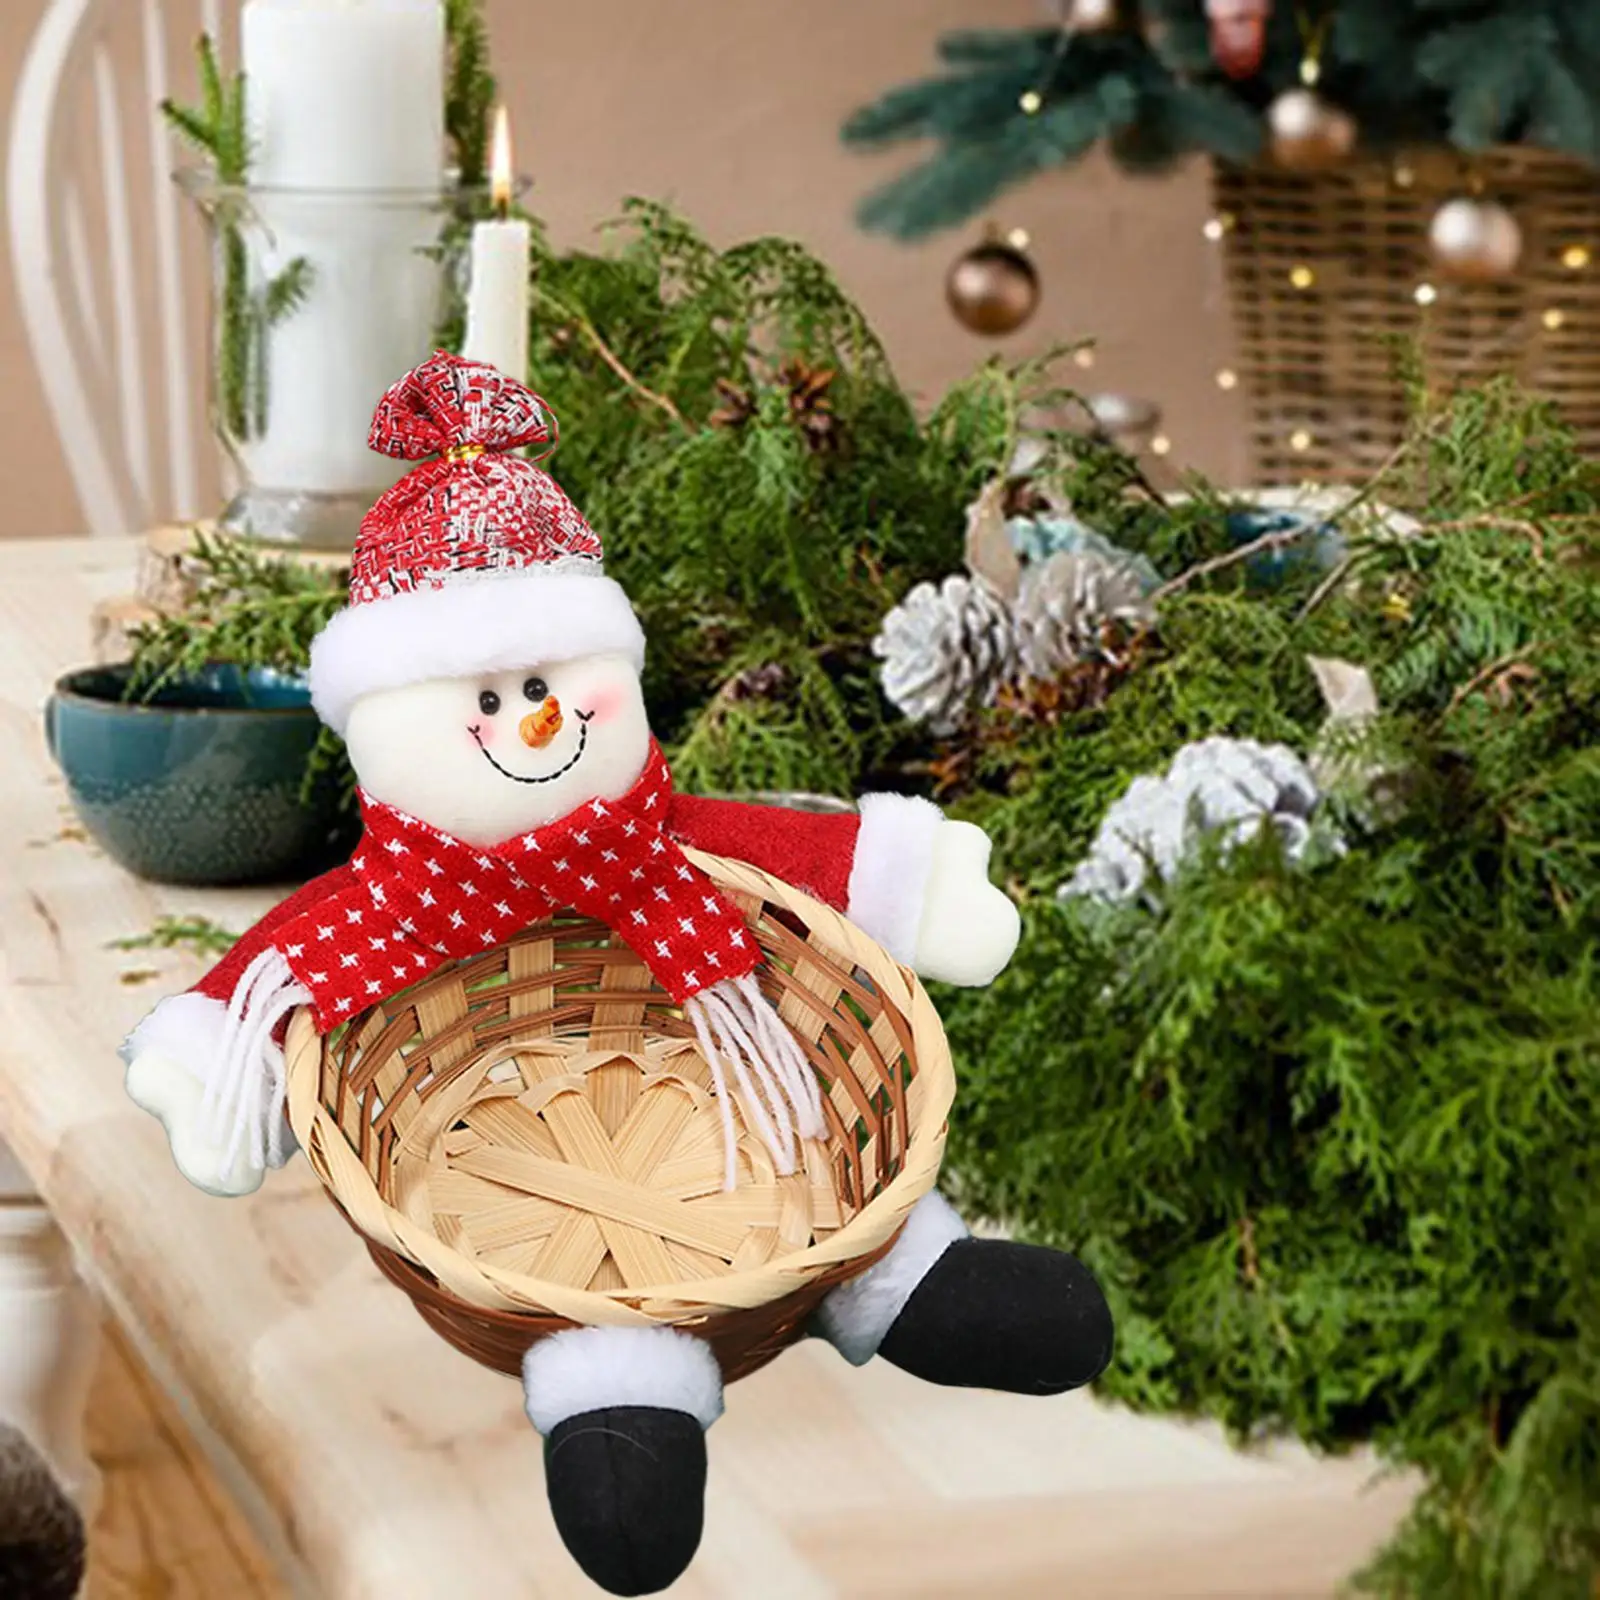 Handwoven Basket Christmas Storage Basket Desktop Ornament Food Candy Basket